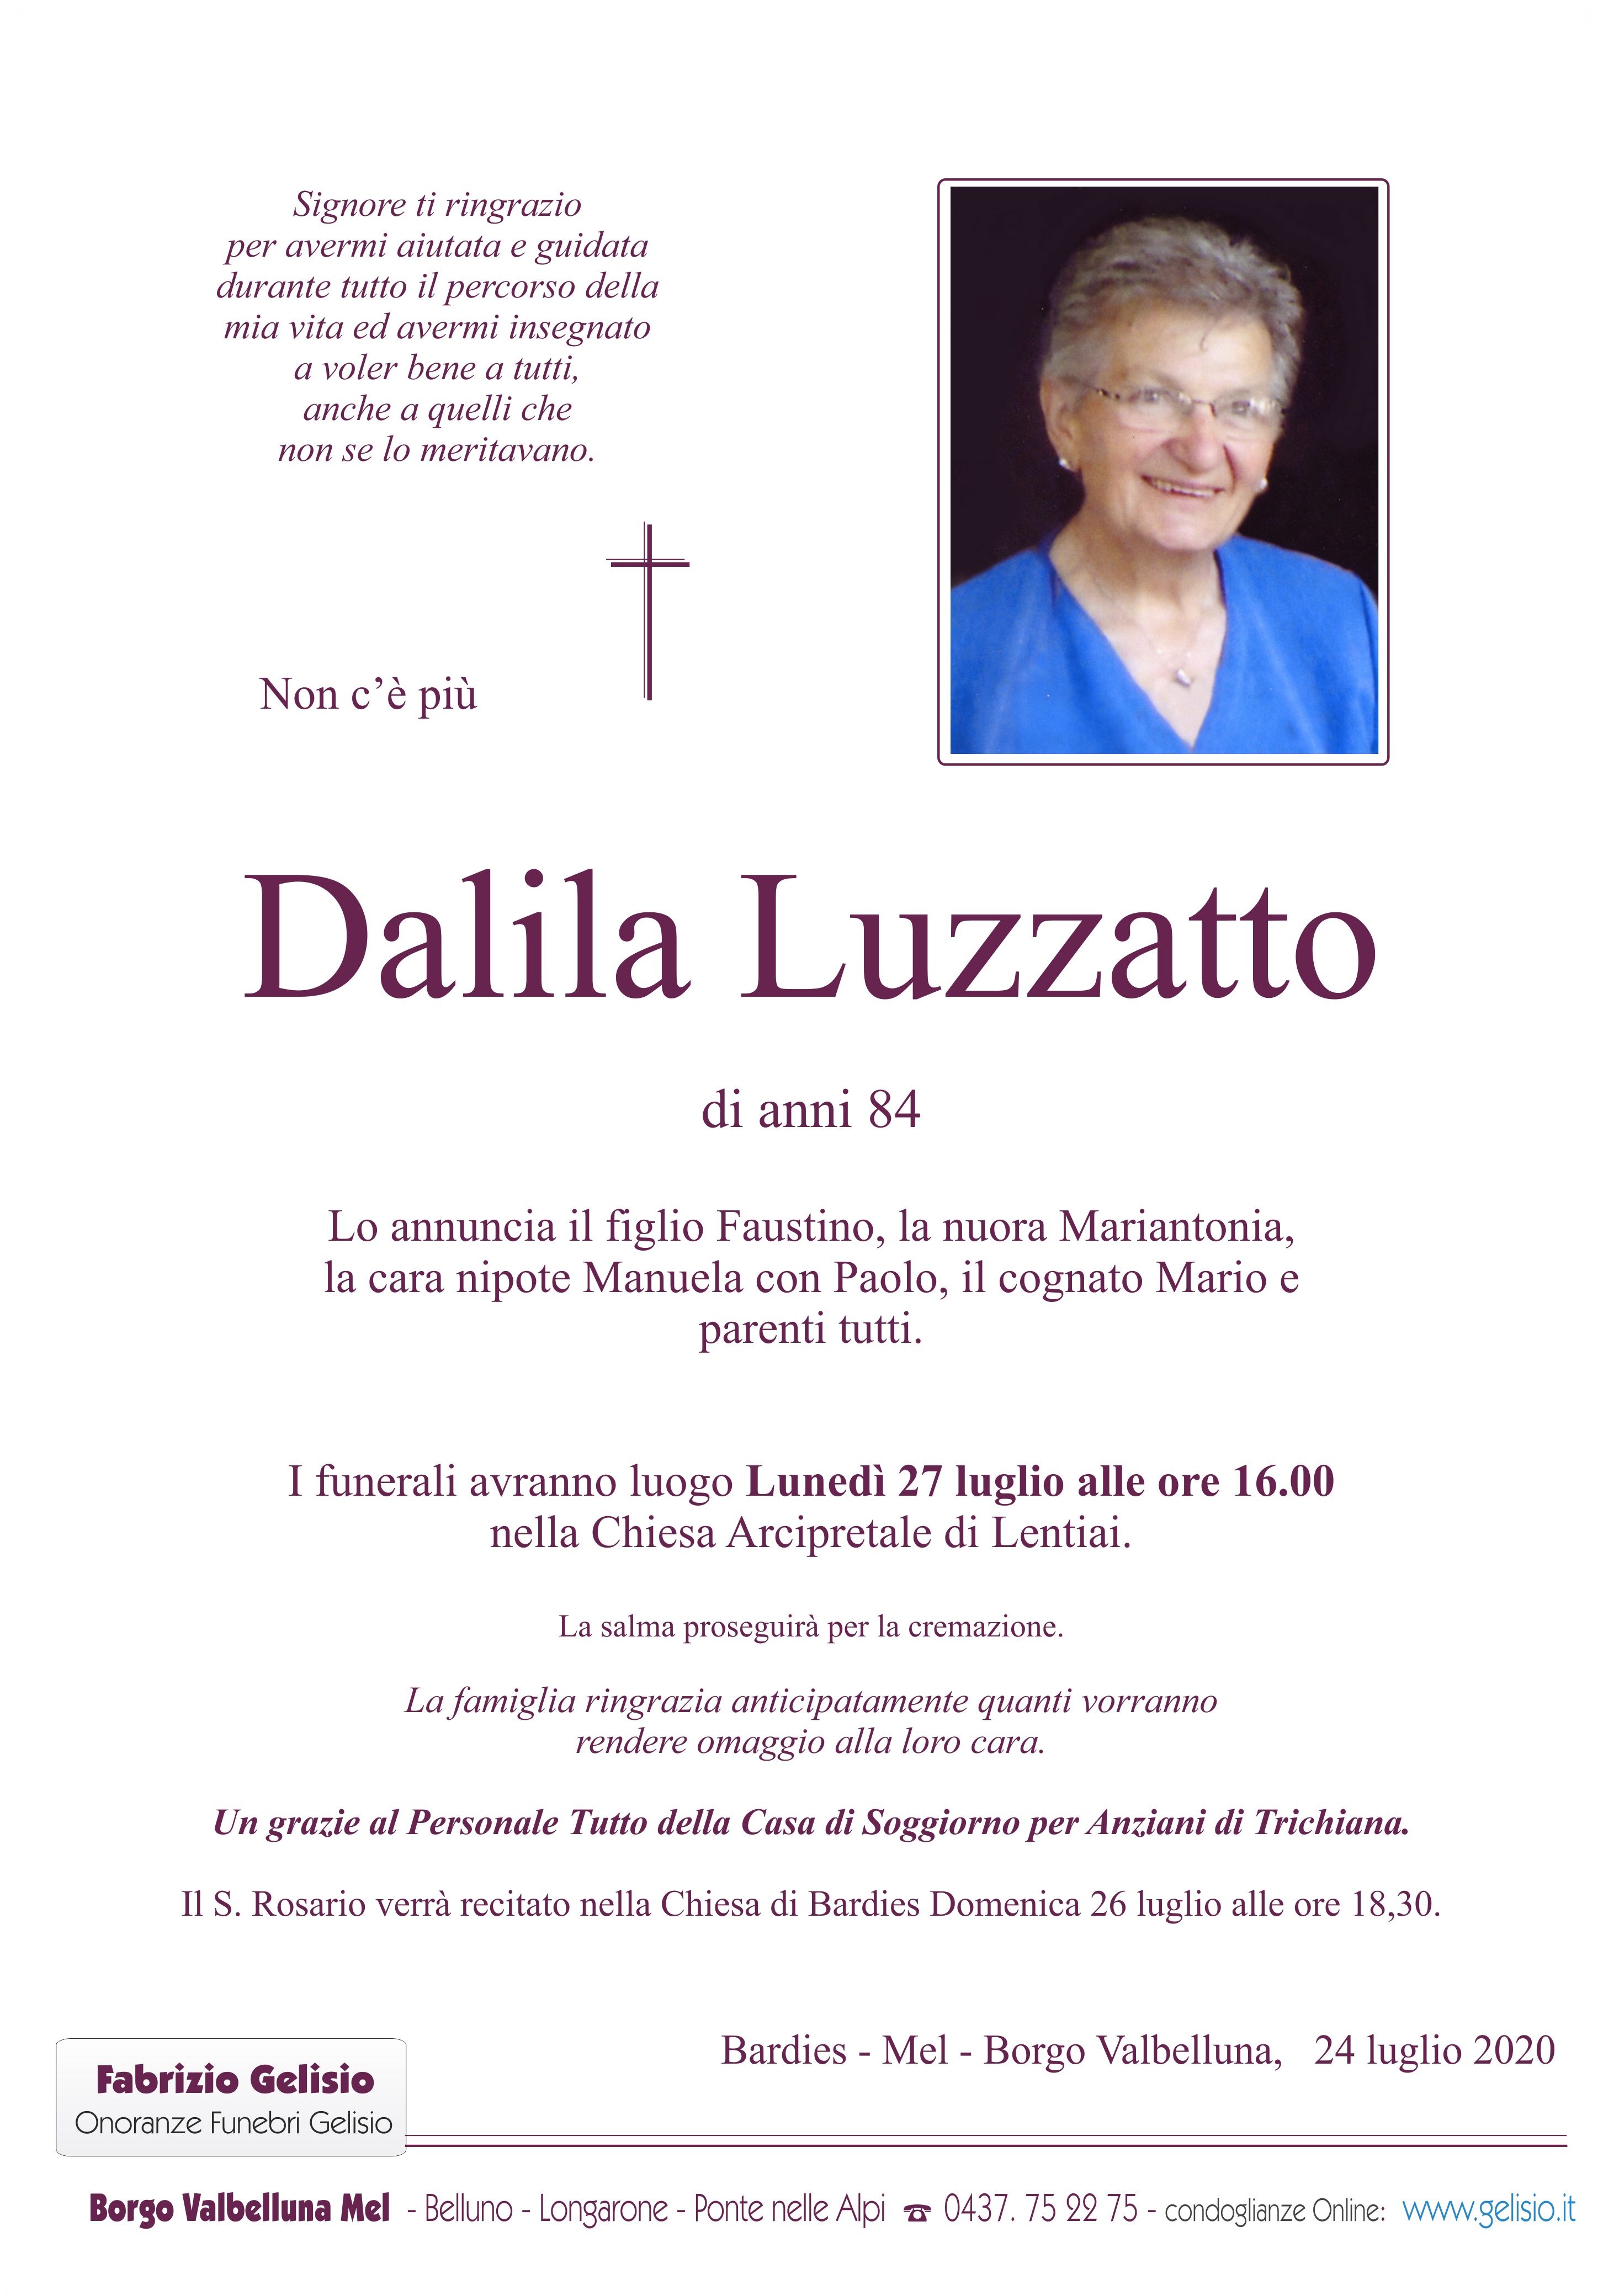 Luzzatto Dalila